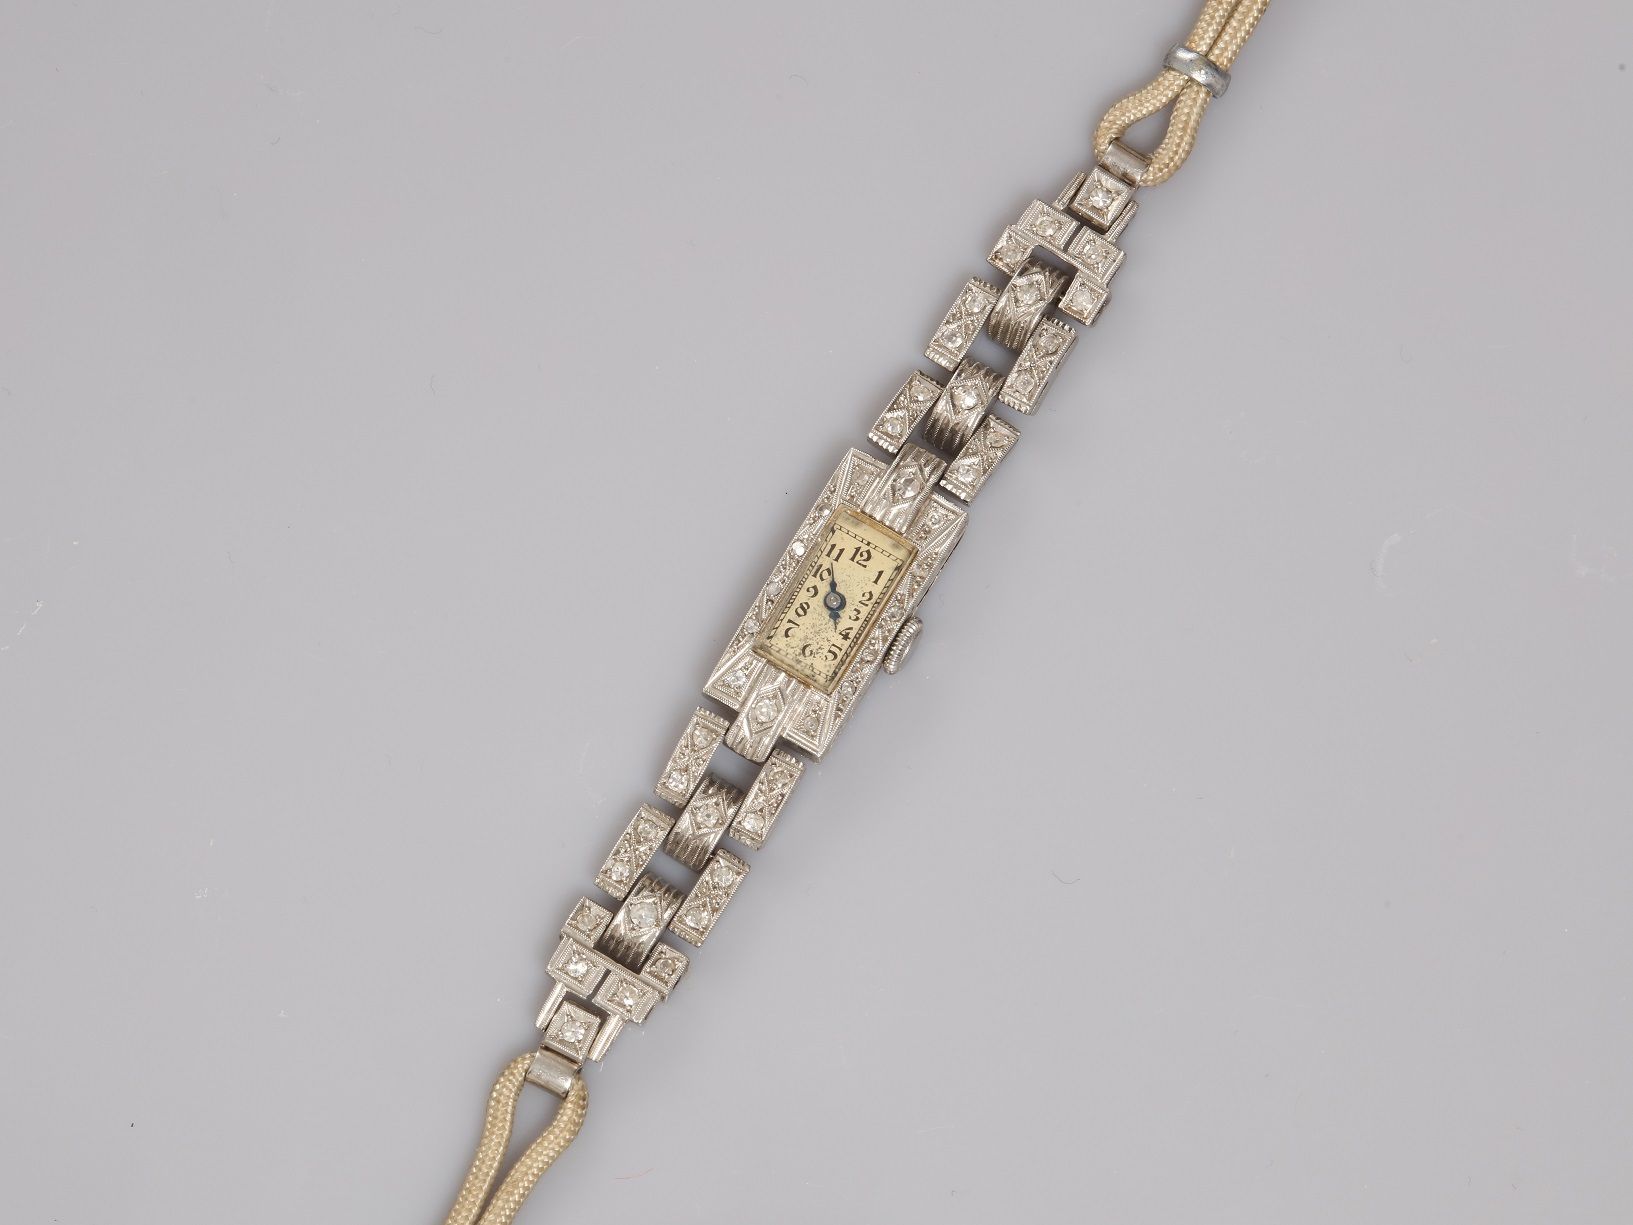 Null 铂金900毫米表带，长方形表圈镶嵌钻石，金属手镯，长16厘米，约1930年，重量：18.7克，毛重。